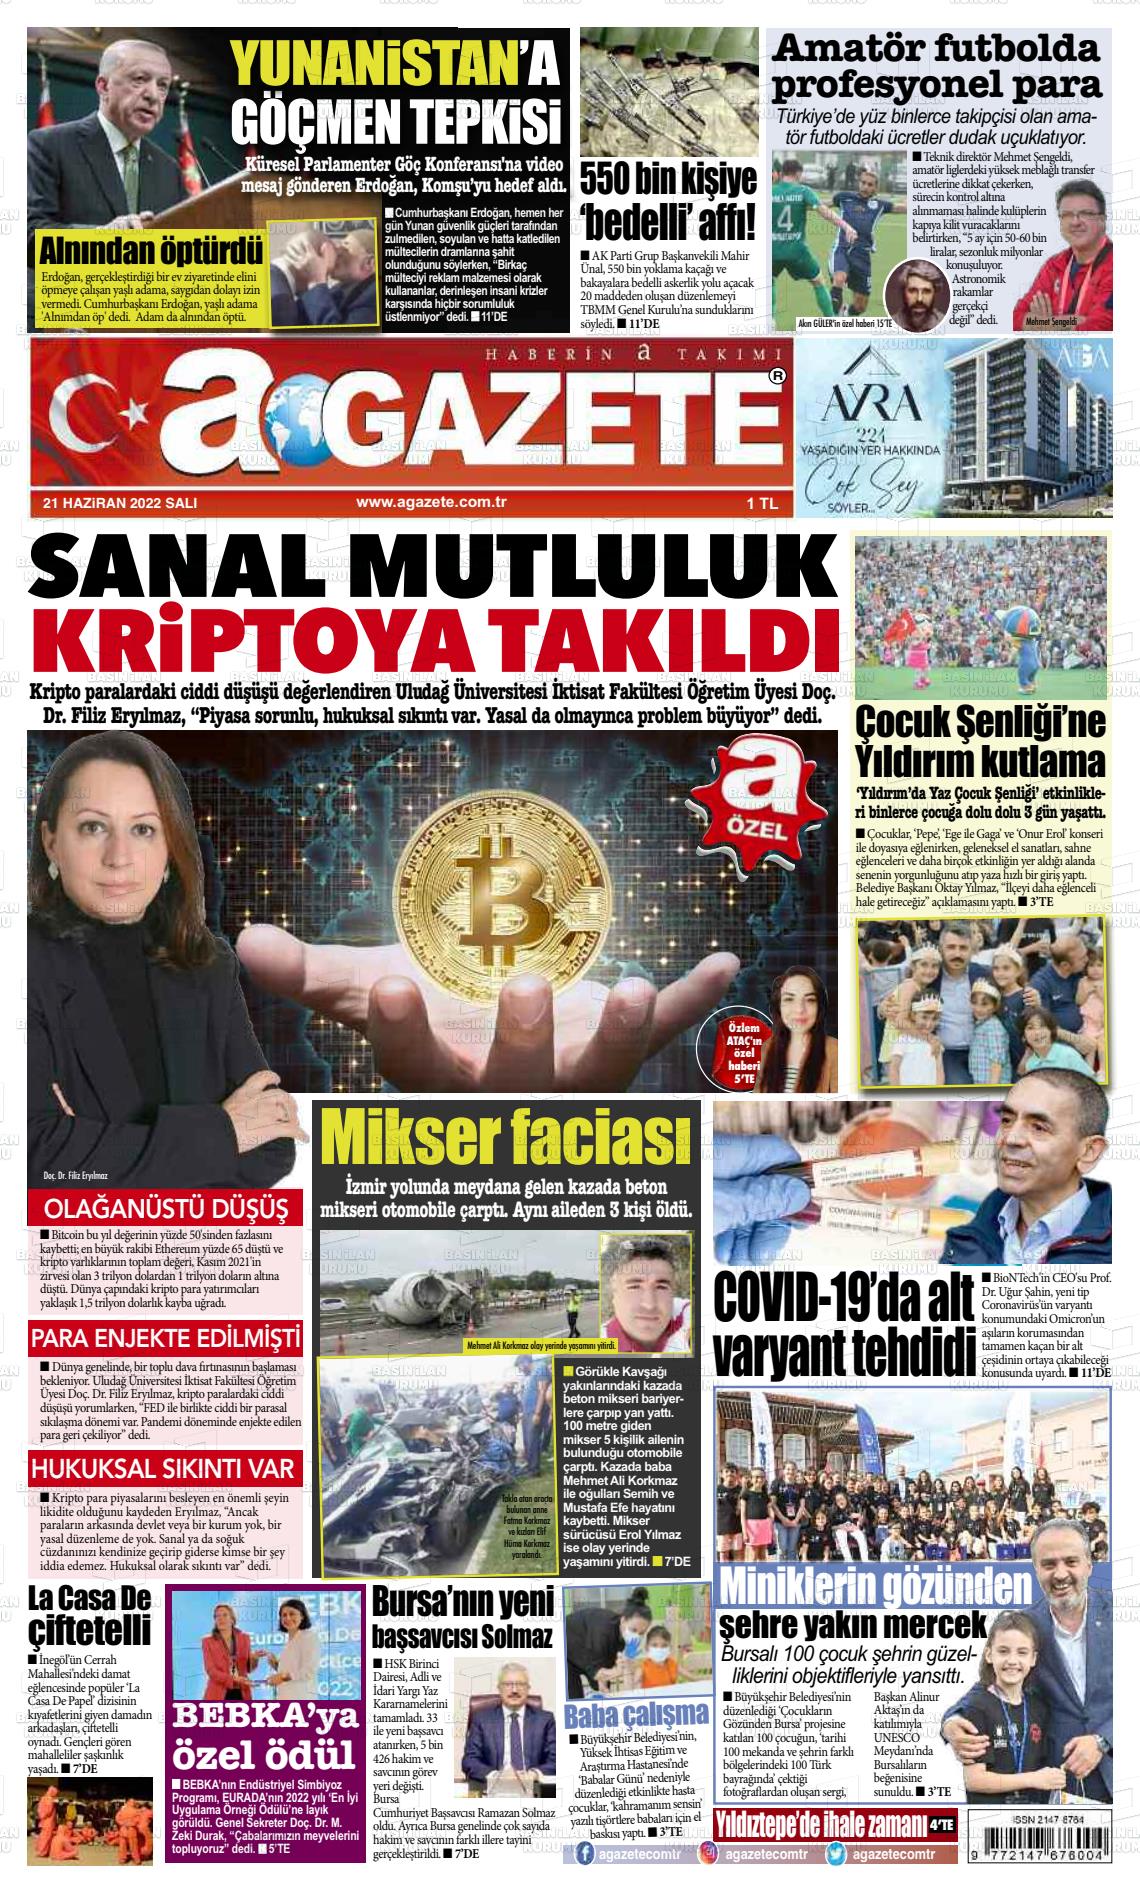 21 Haziran 2022 a gazete Gazete Manşeti